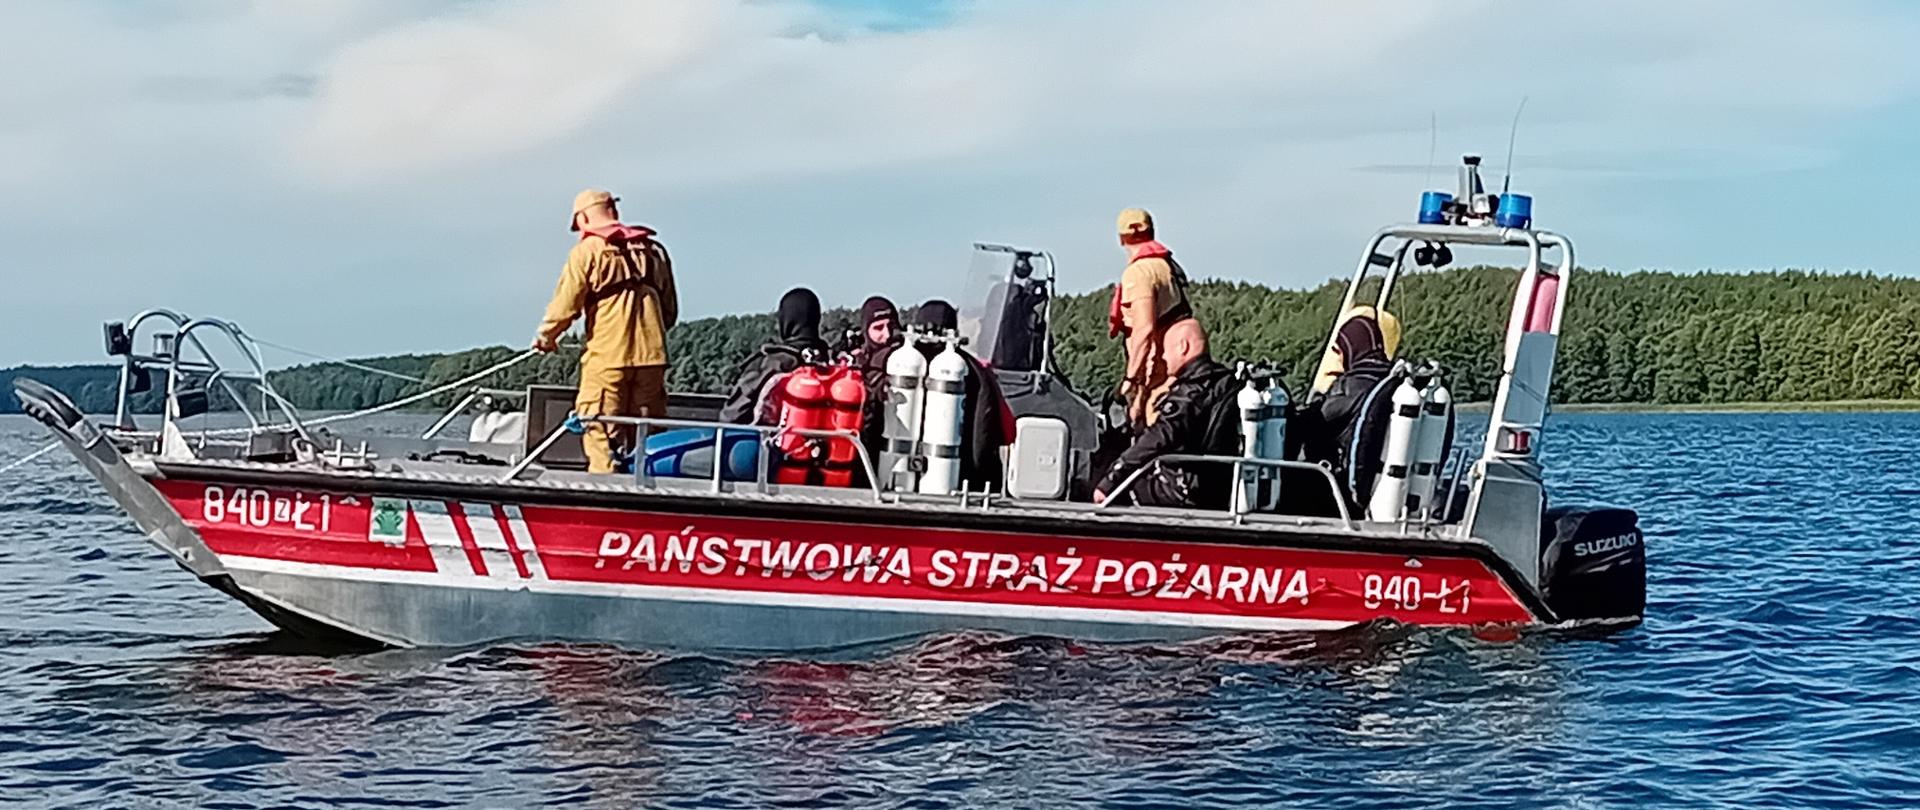 Na zdjęciu widać lódź na wodzie z napisem Państwowa Straż Pożarna oraz grupą strażaków na pokładzie.